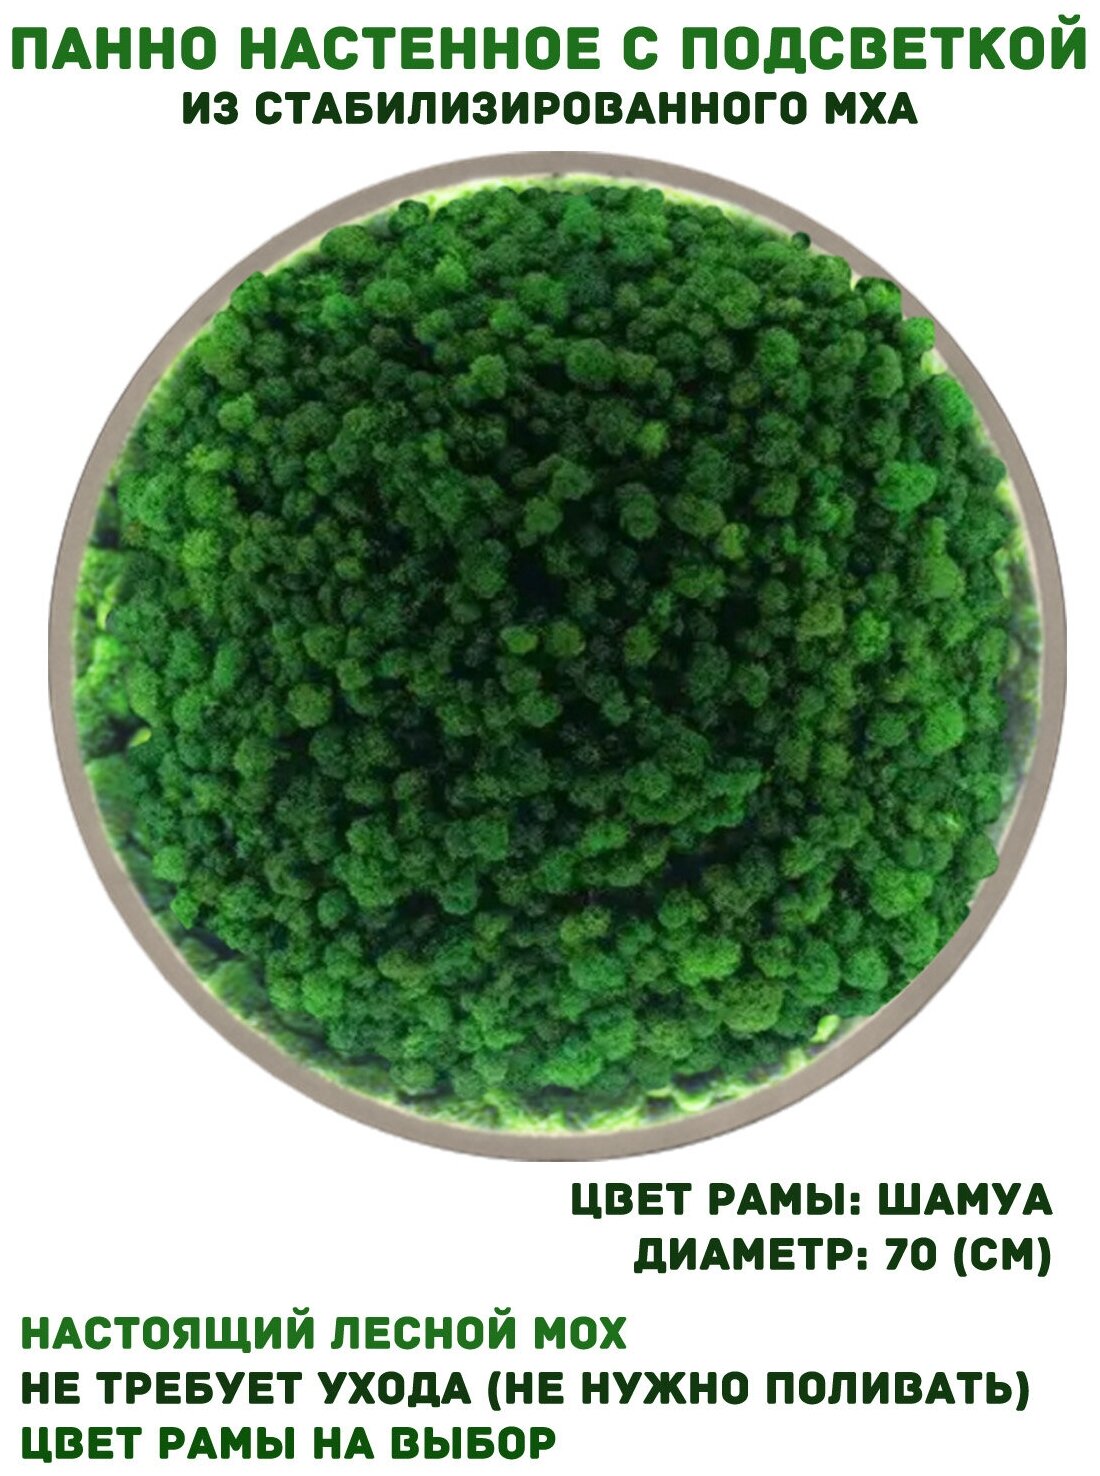 Круглое панно из стабилизированно мха GardenGo с подсветкой в рамке цвета шамуа диаметр 70 см, цвет мха зеленый